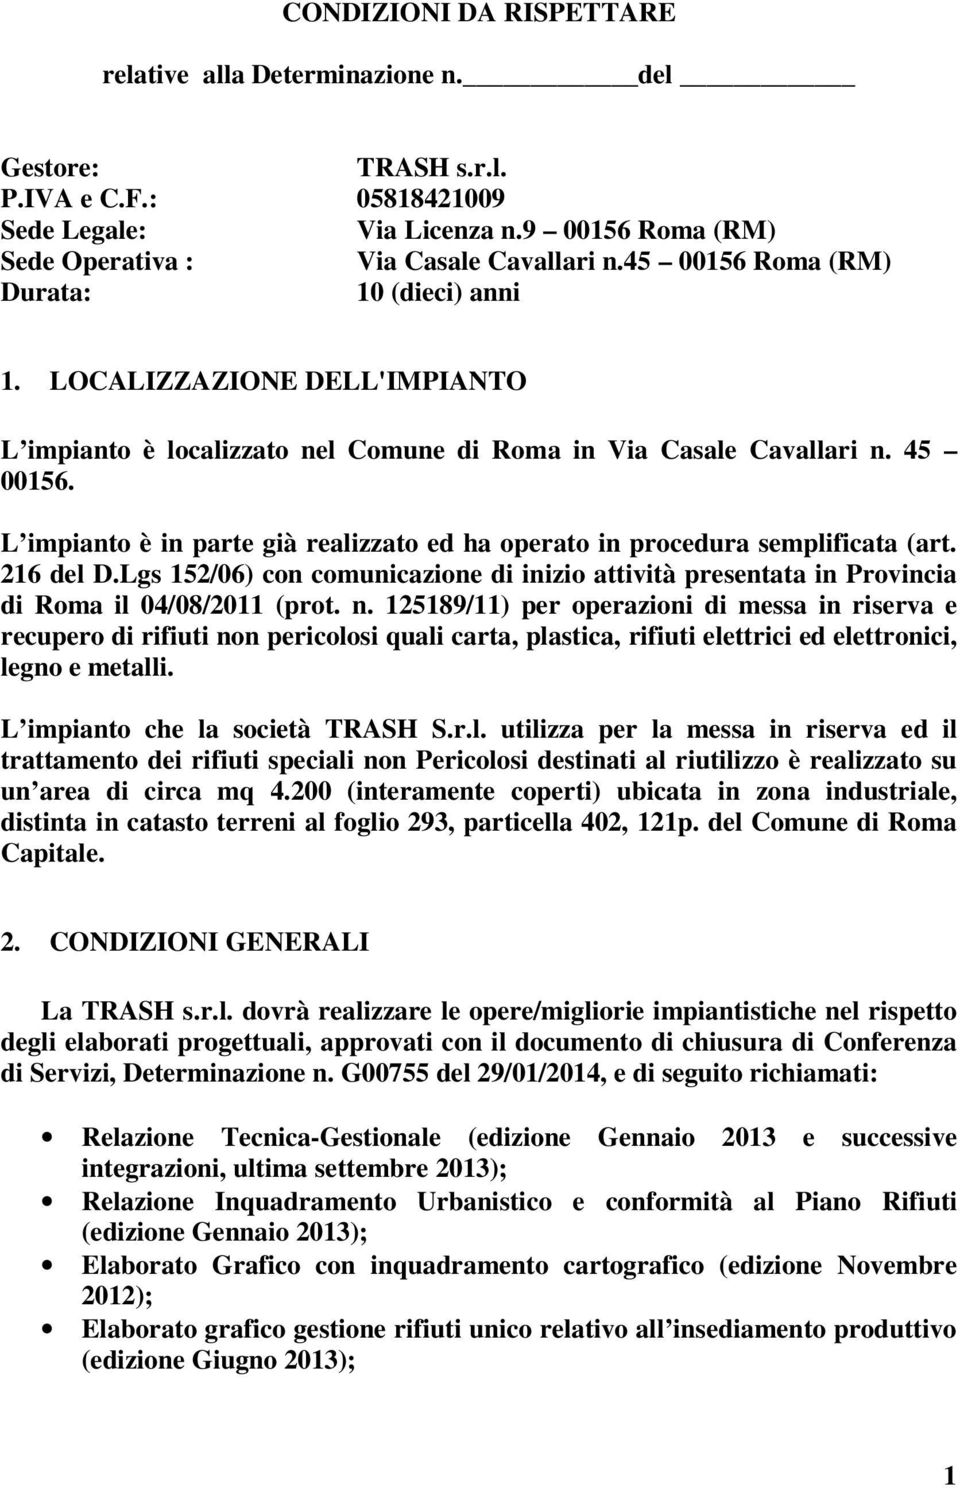 L impianto è in parte già realizzato ed ha operato in procedura semplificata (art. 216 del D.Lgs 152/06) con comunicazione di inizio attività presentata in Provincia di Roma il 04/08/2011 (prot. n.